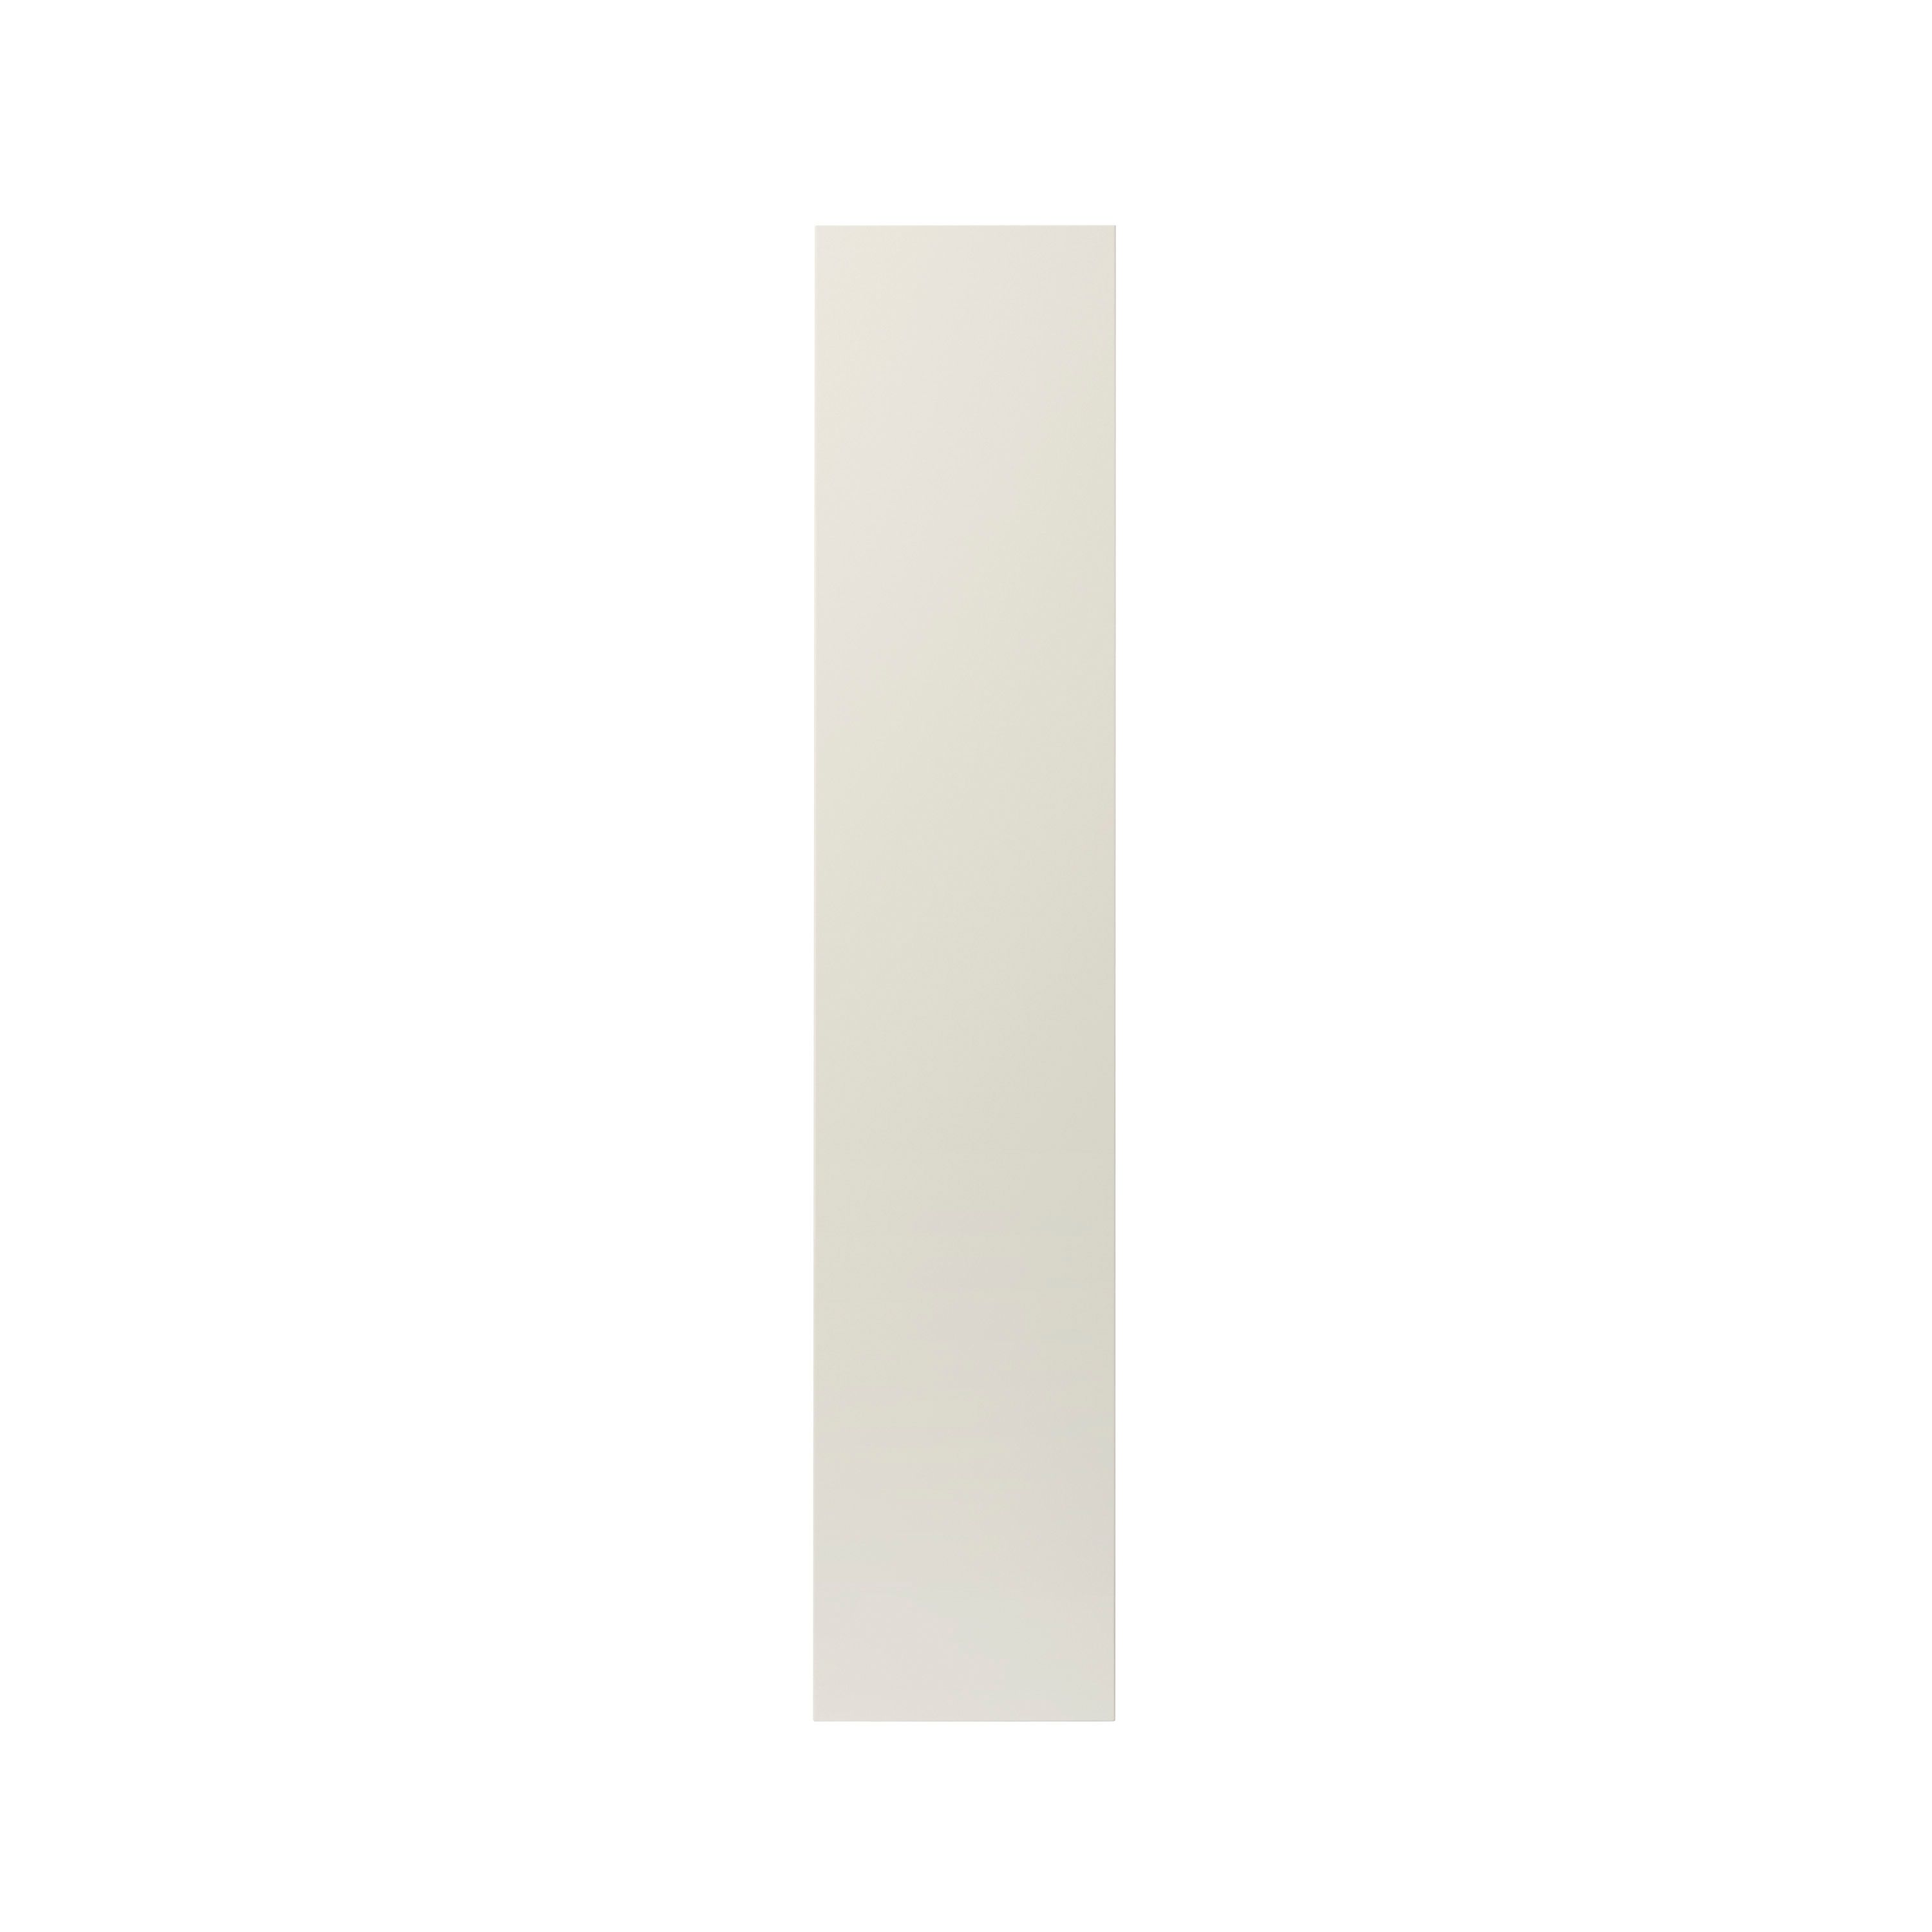 GoodHome Stevia Gloss cream slab Tall larder Cabinet door (W)300mm (H)1467mm (T)18mm